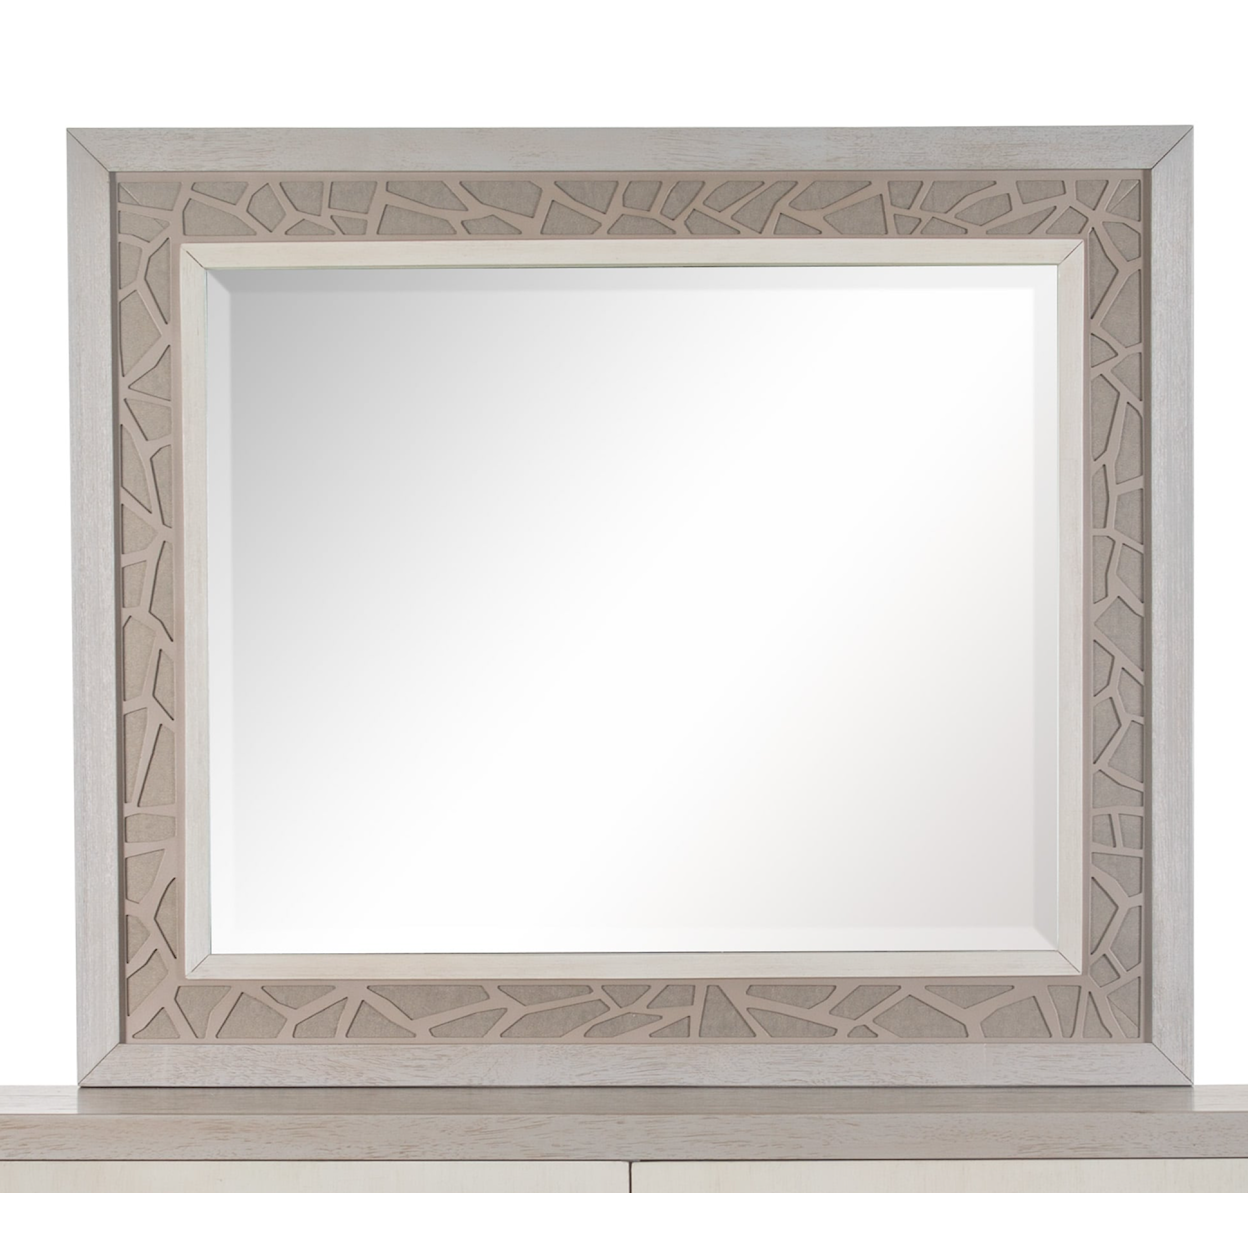 Magnussen Home Lenox Bedroom Dresser Mirror